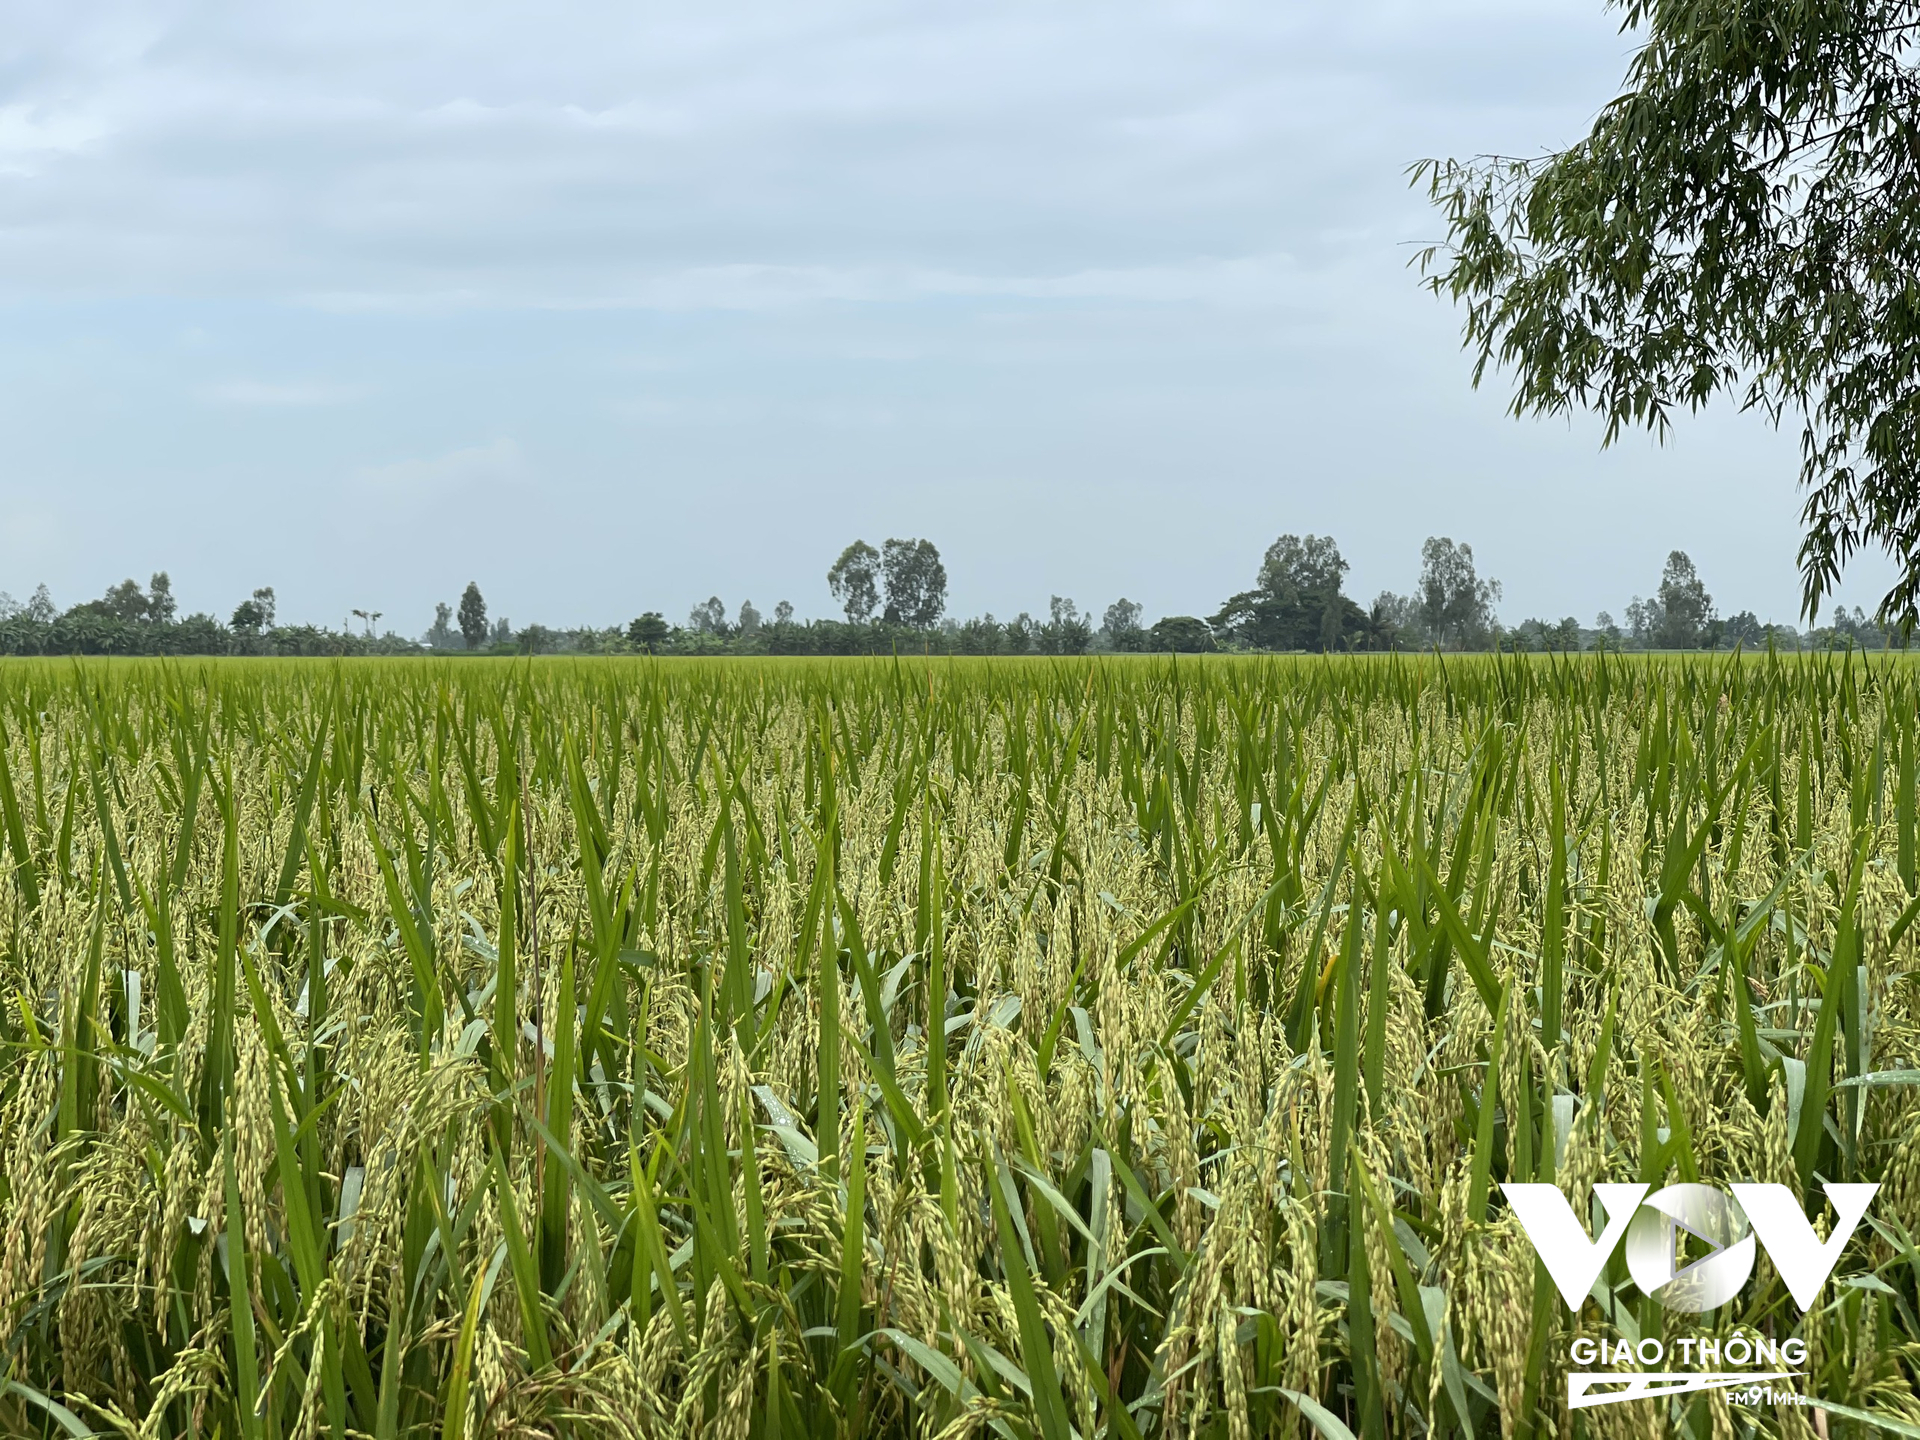 Việc tăng cường hoạt động của Nhóm công tác PPP (Đối tác công tư) ngành hàng lúa gạo sẽ thu hút đầu tư, công nghệ để nâng tầm thương hiệu gạo Việt